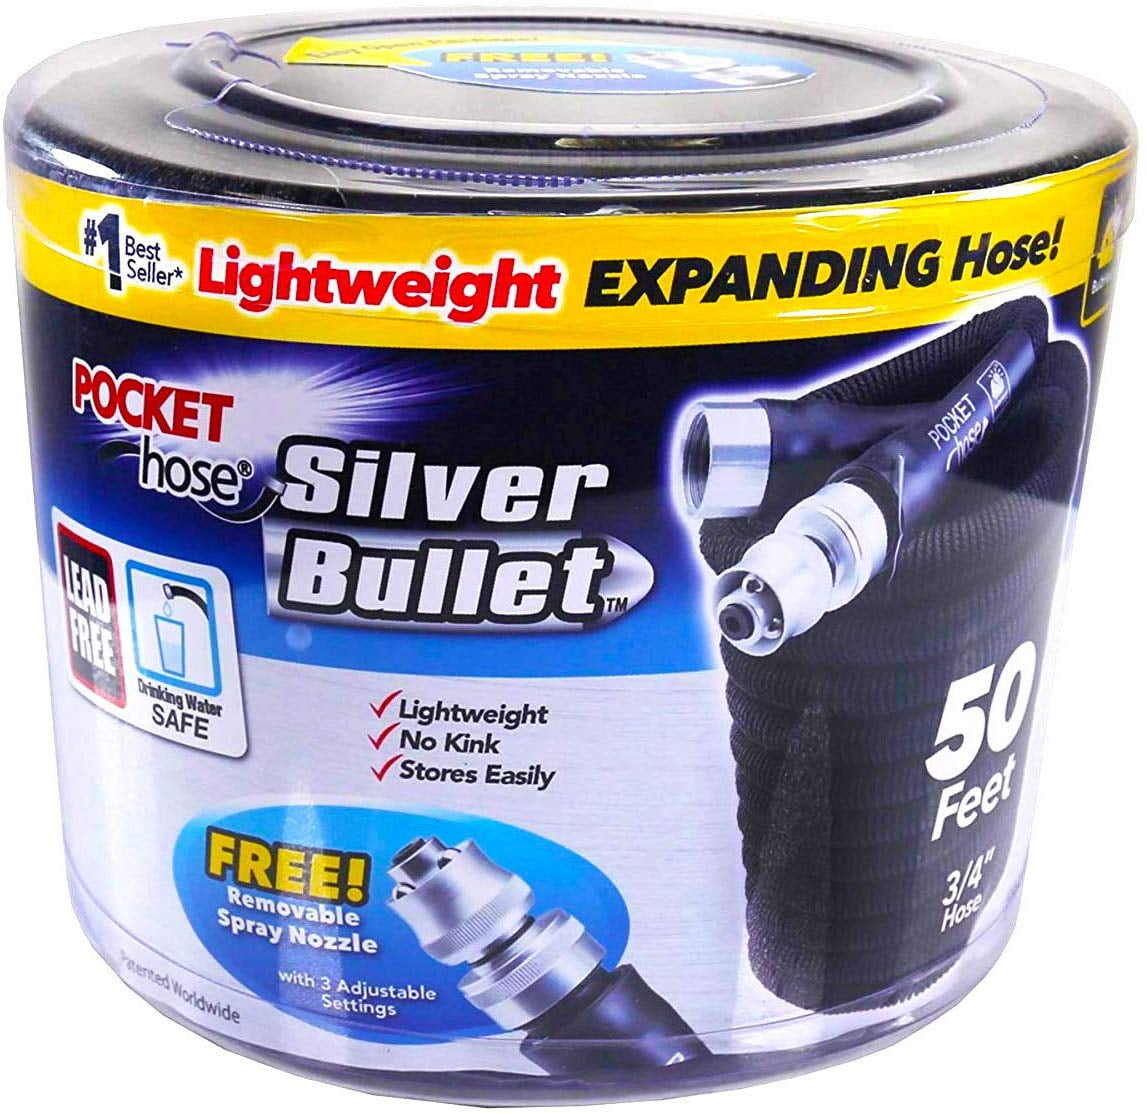 for sale online Pocket Hose Silver Bullet Expandable Water Hose 75ft 